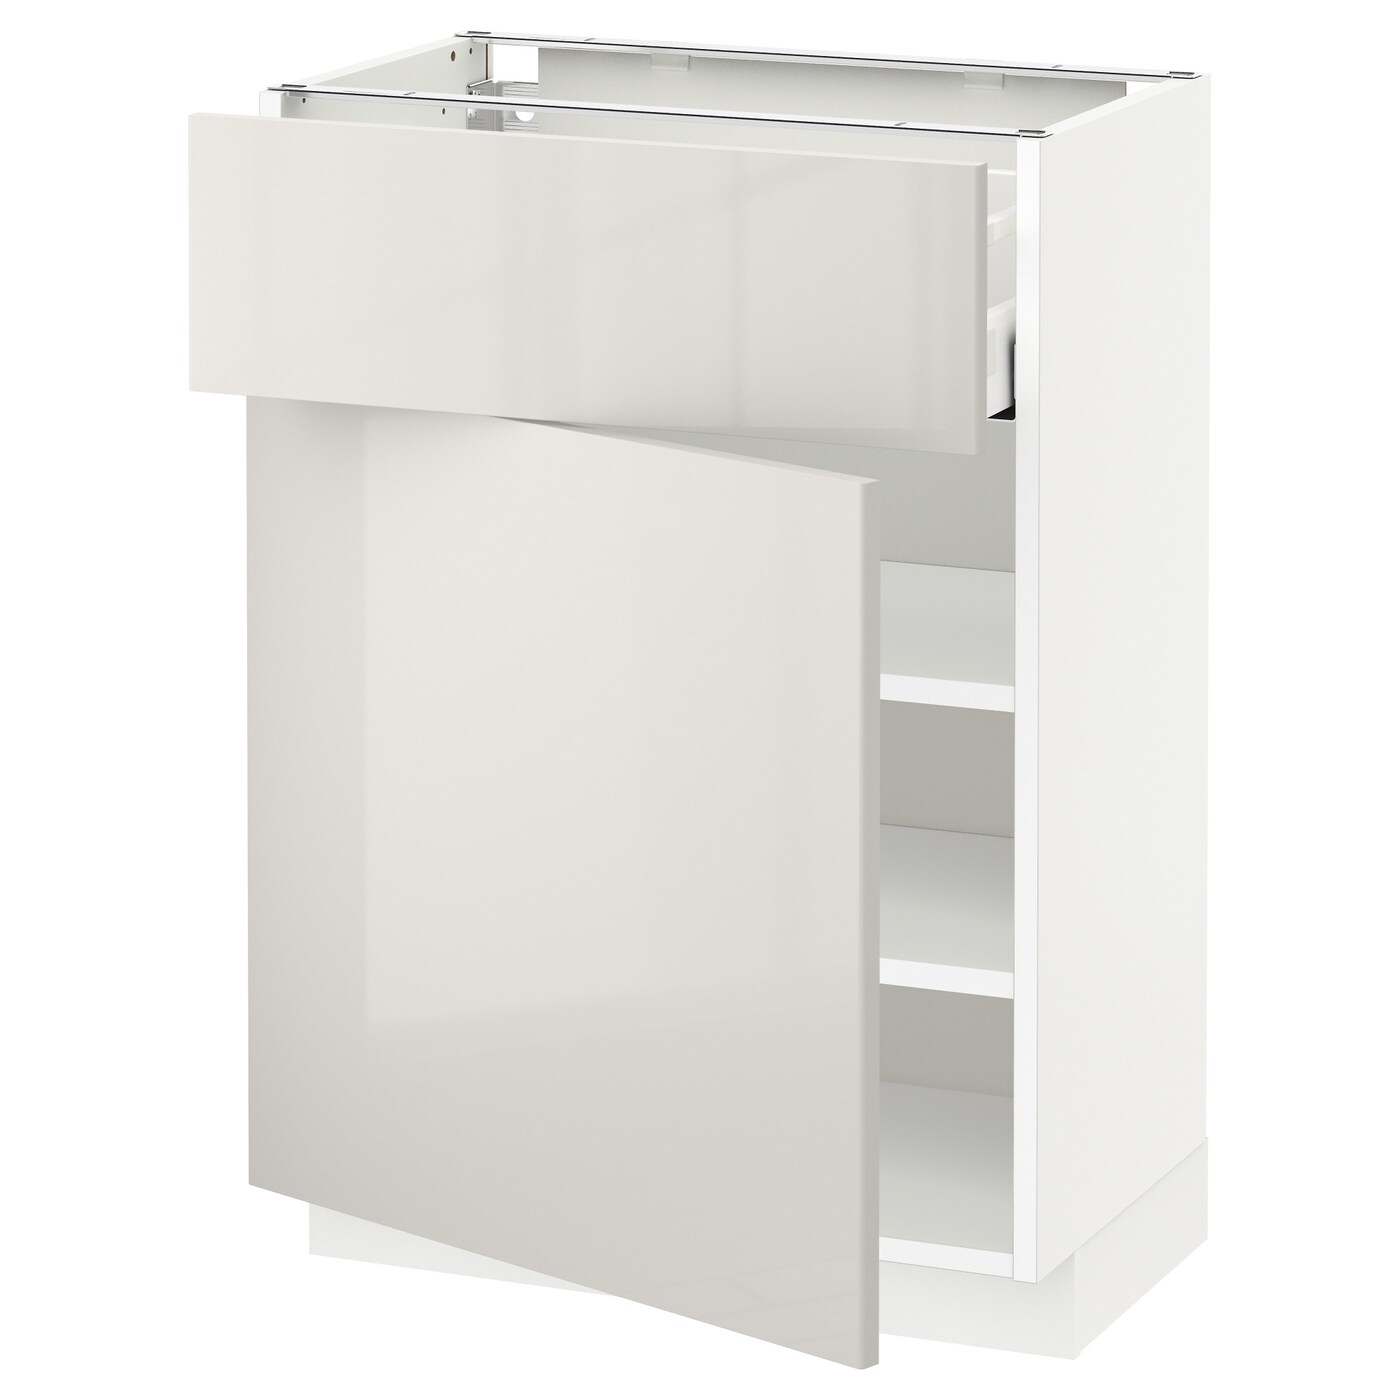 Напольный кухонный шкаф  - IKEA METOD MAXIMERA, 88x39x60см, белый/светло-серый, МЕТОД МАКСИМЕРА ИКЕА